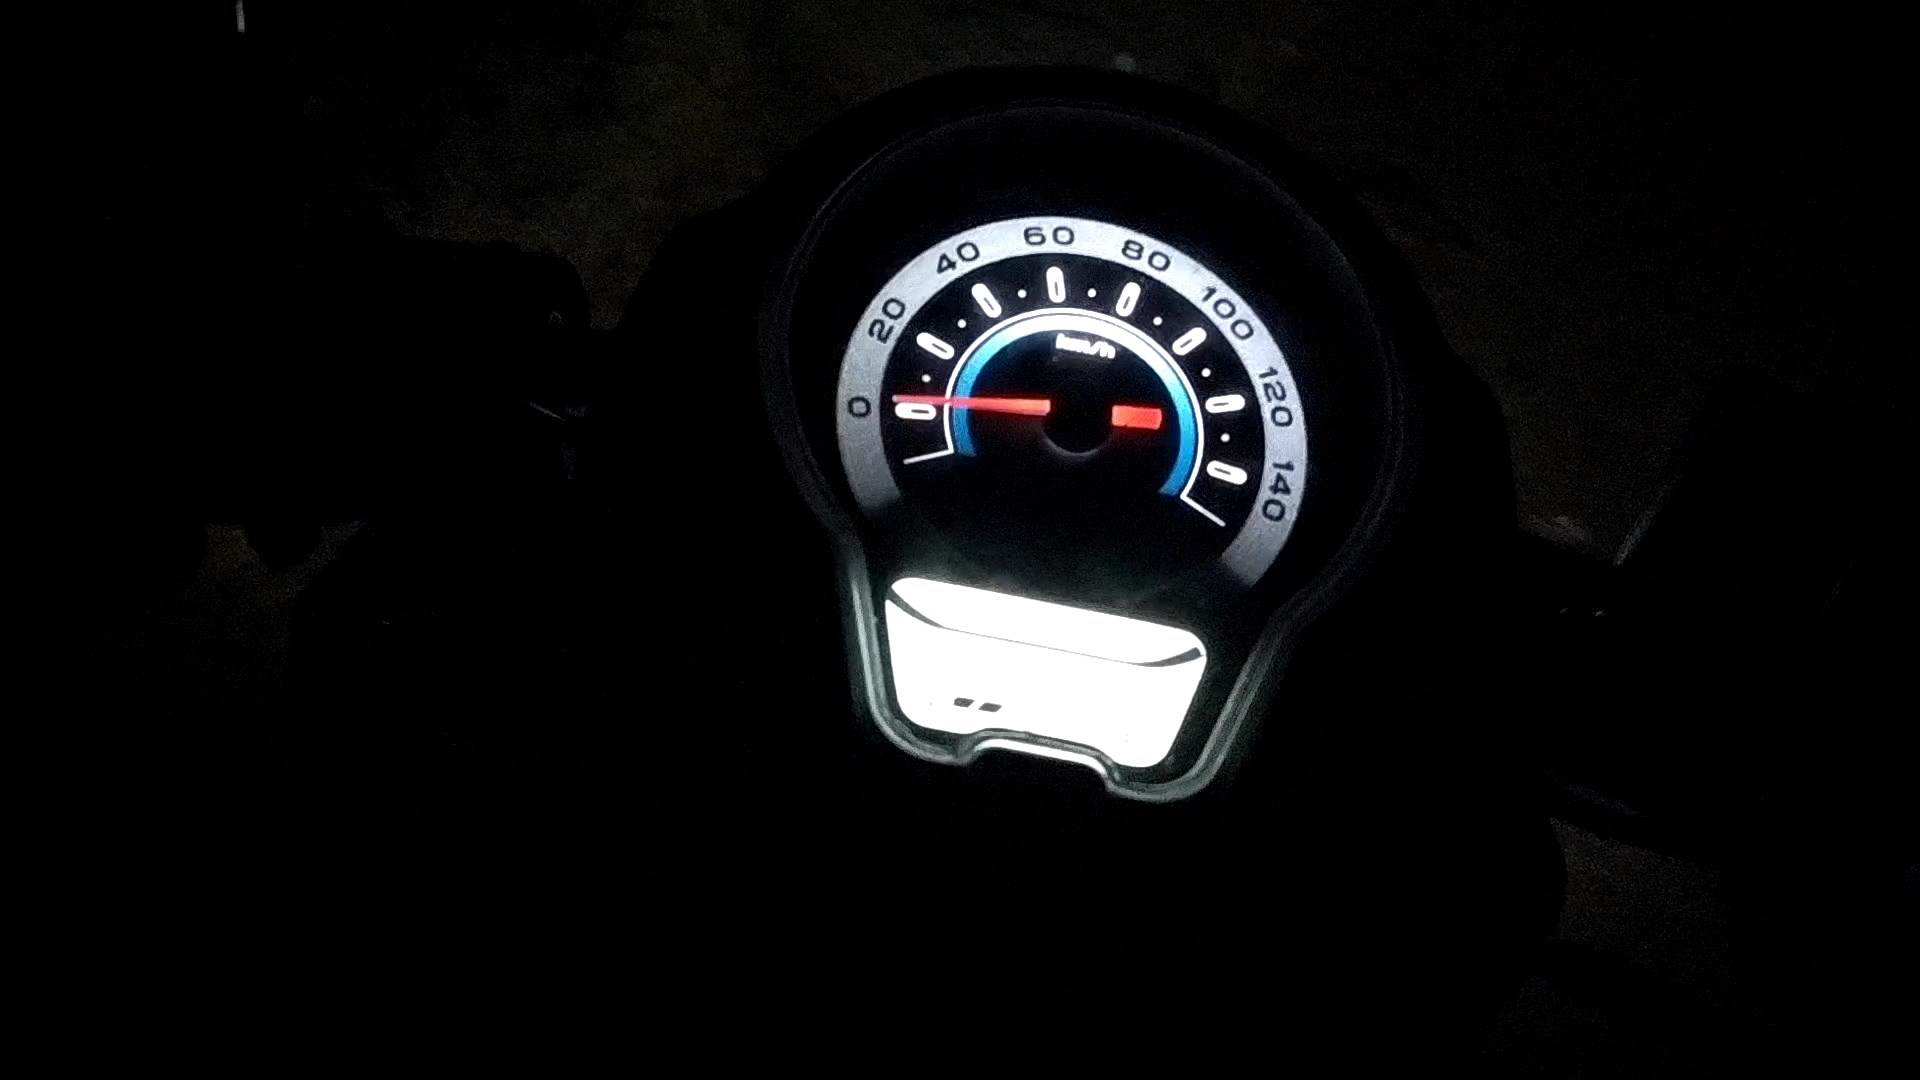 Nyala instrument speedometer Honda Scoopy terbaru saat malam